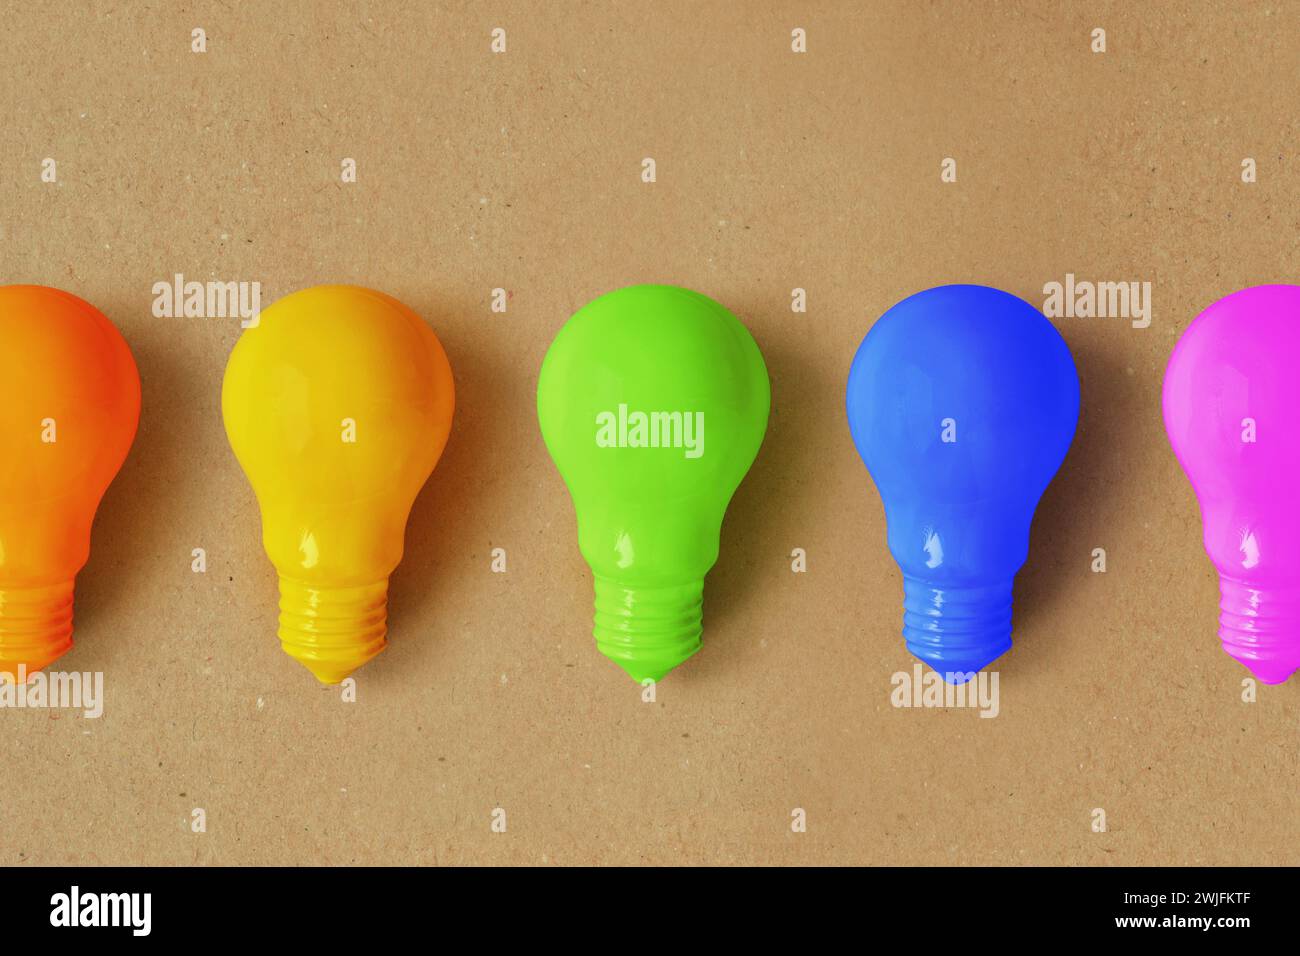 Ampoules de différentes couleurs sur fond de papier recyclé - concept de créativité et de pensée divergente Banque D'Images